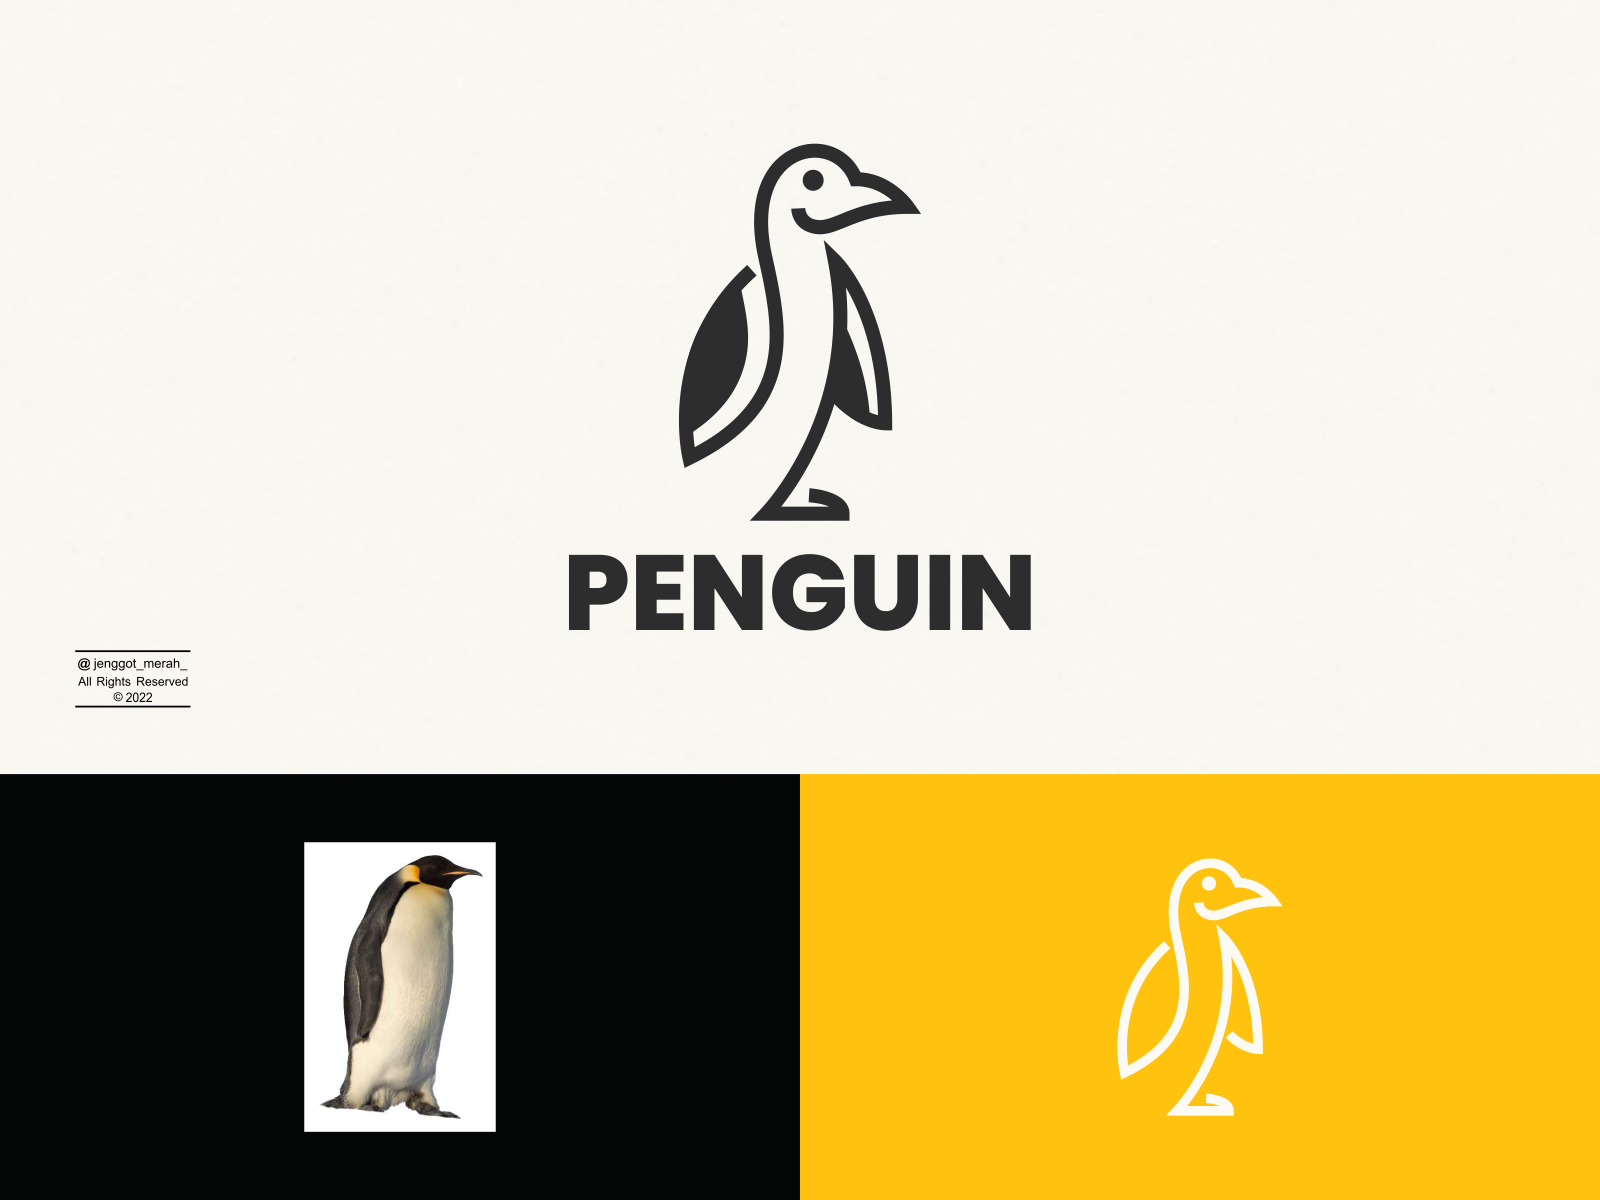 penguin books logo png